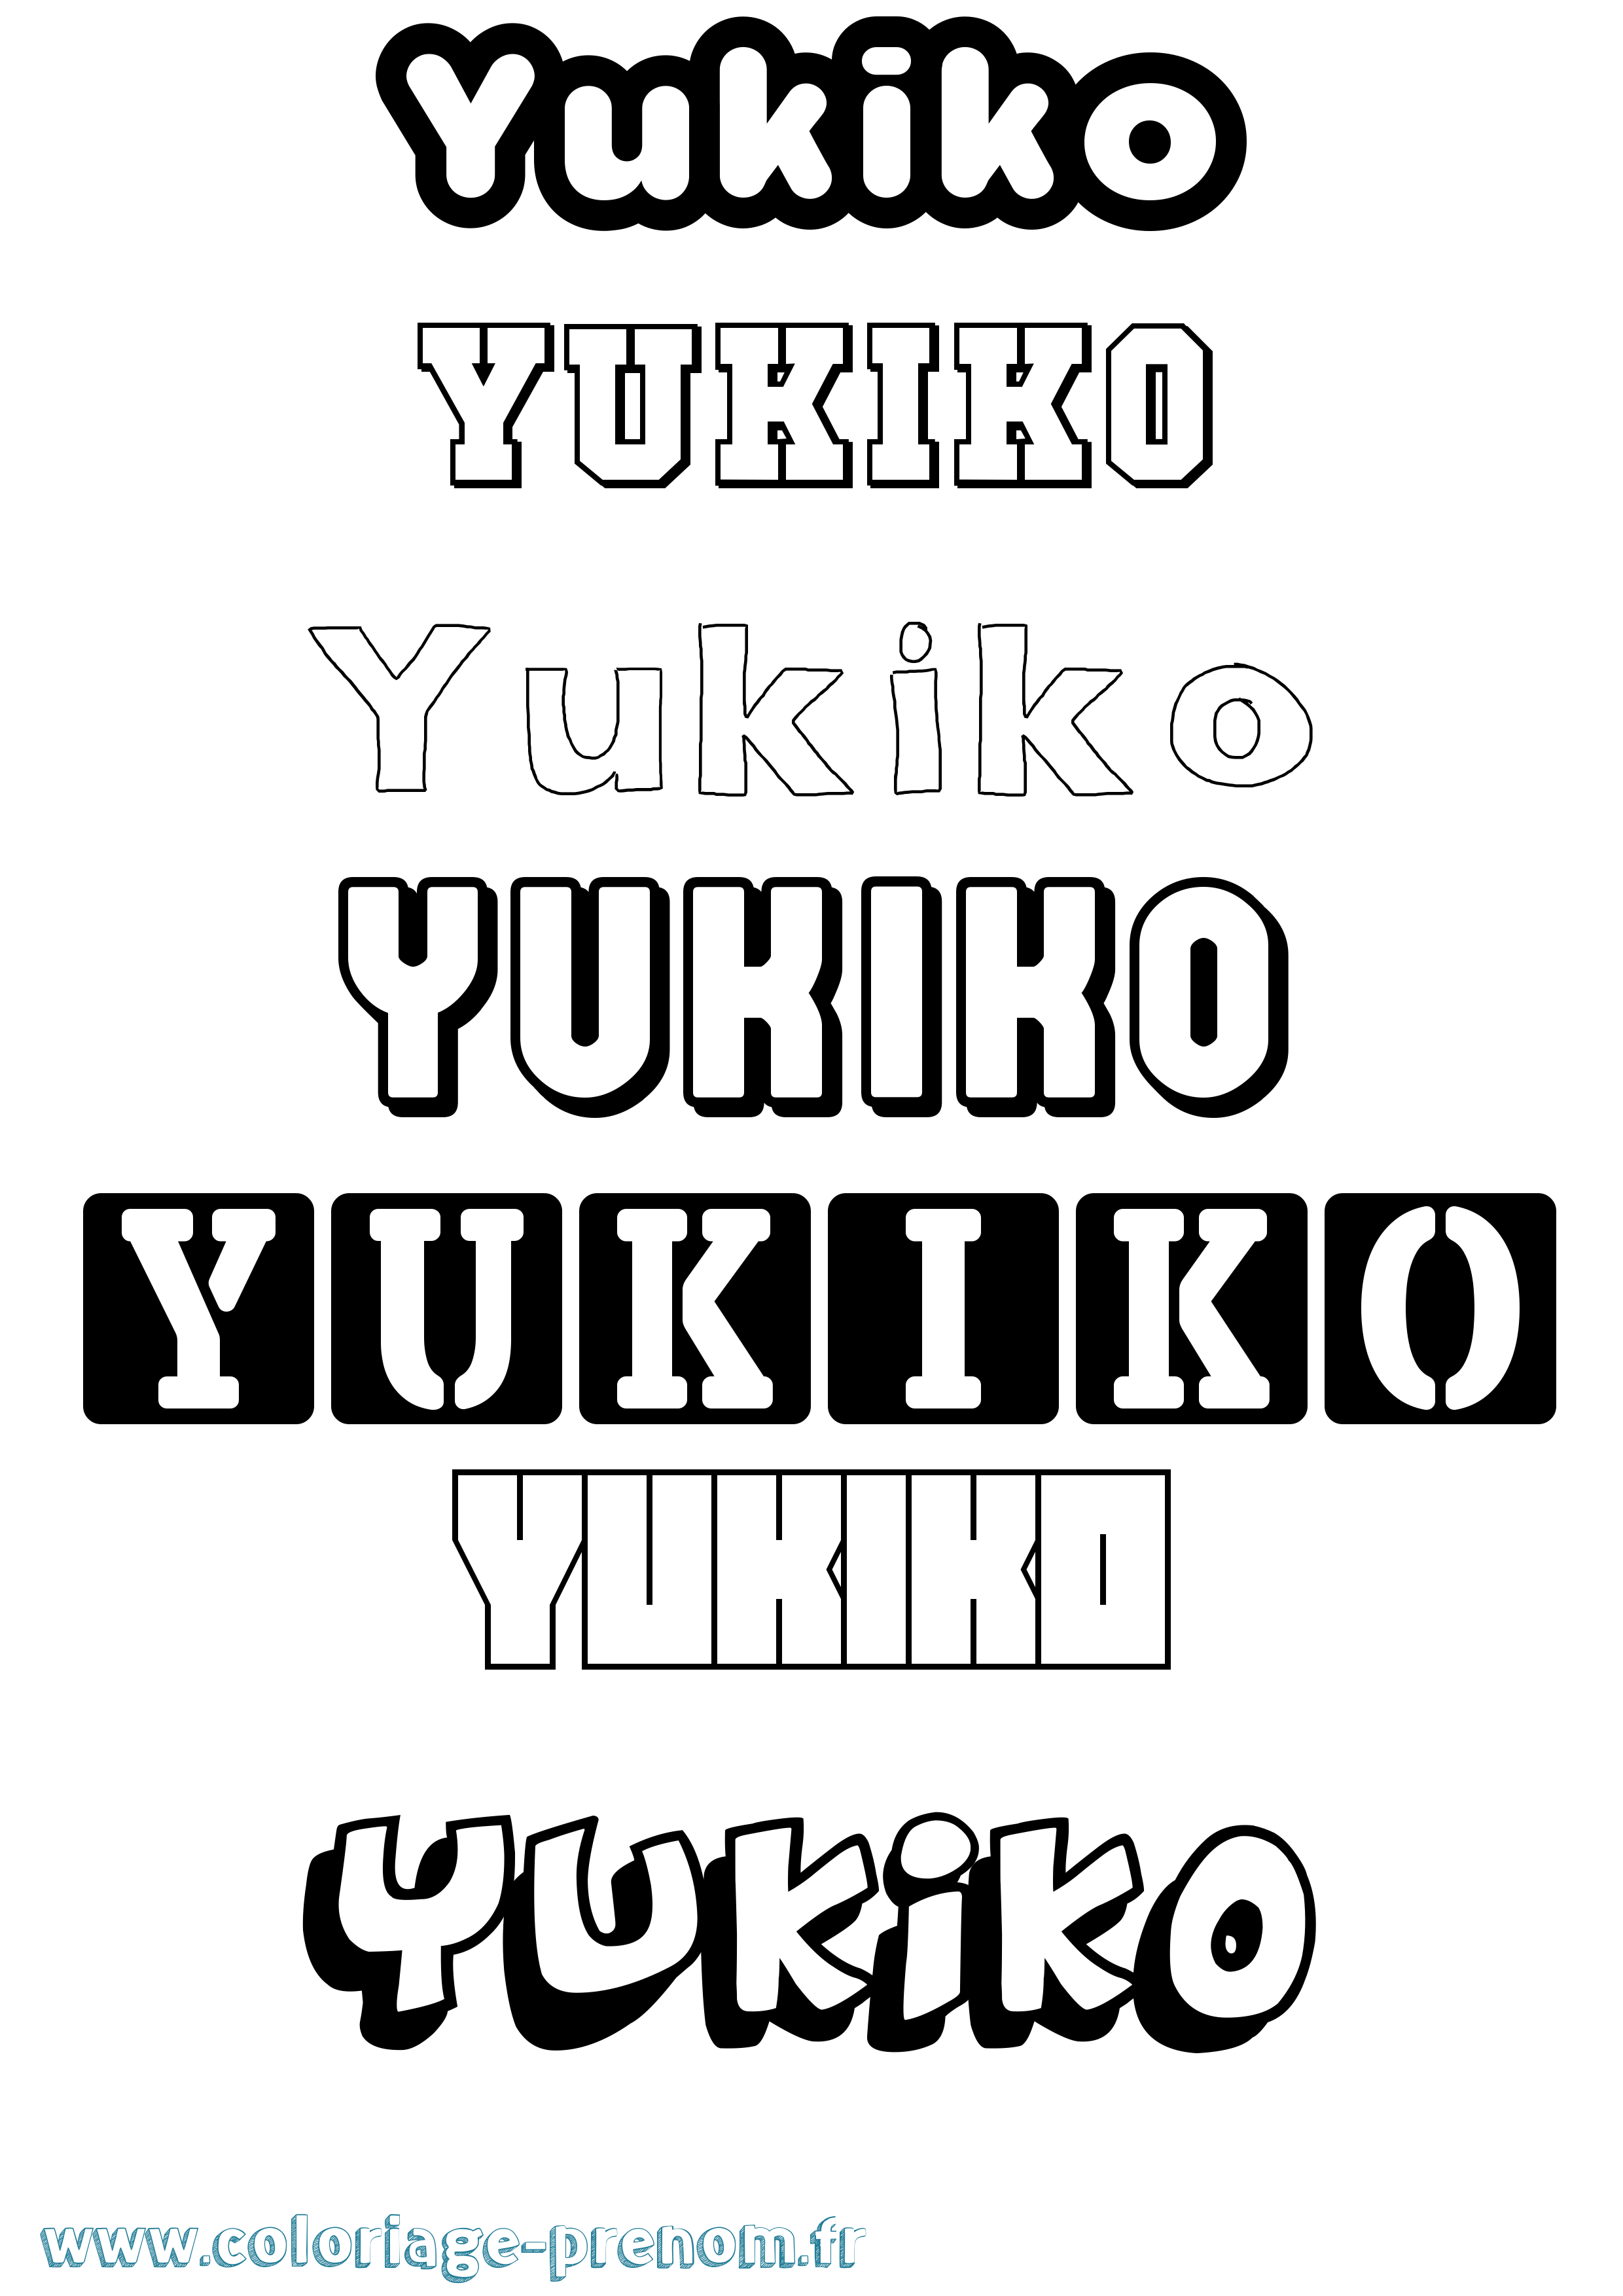 Coloriage prénom Yukiko Simple